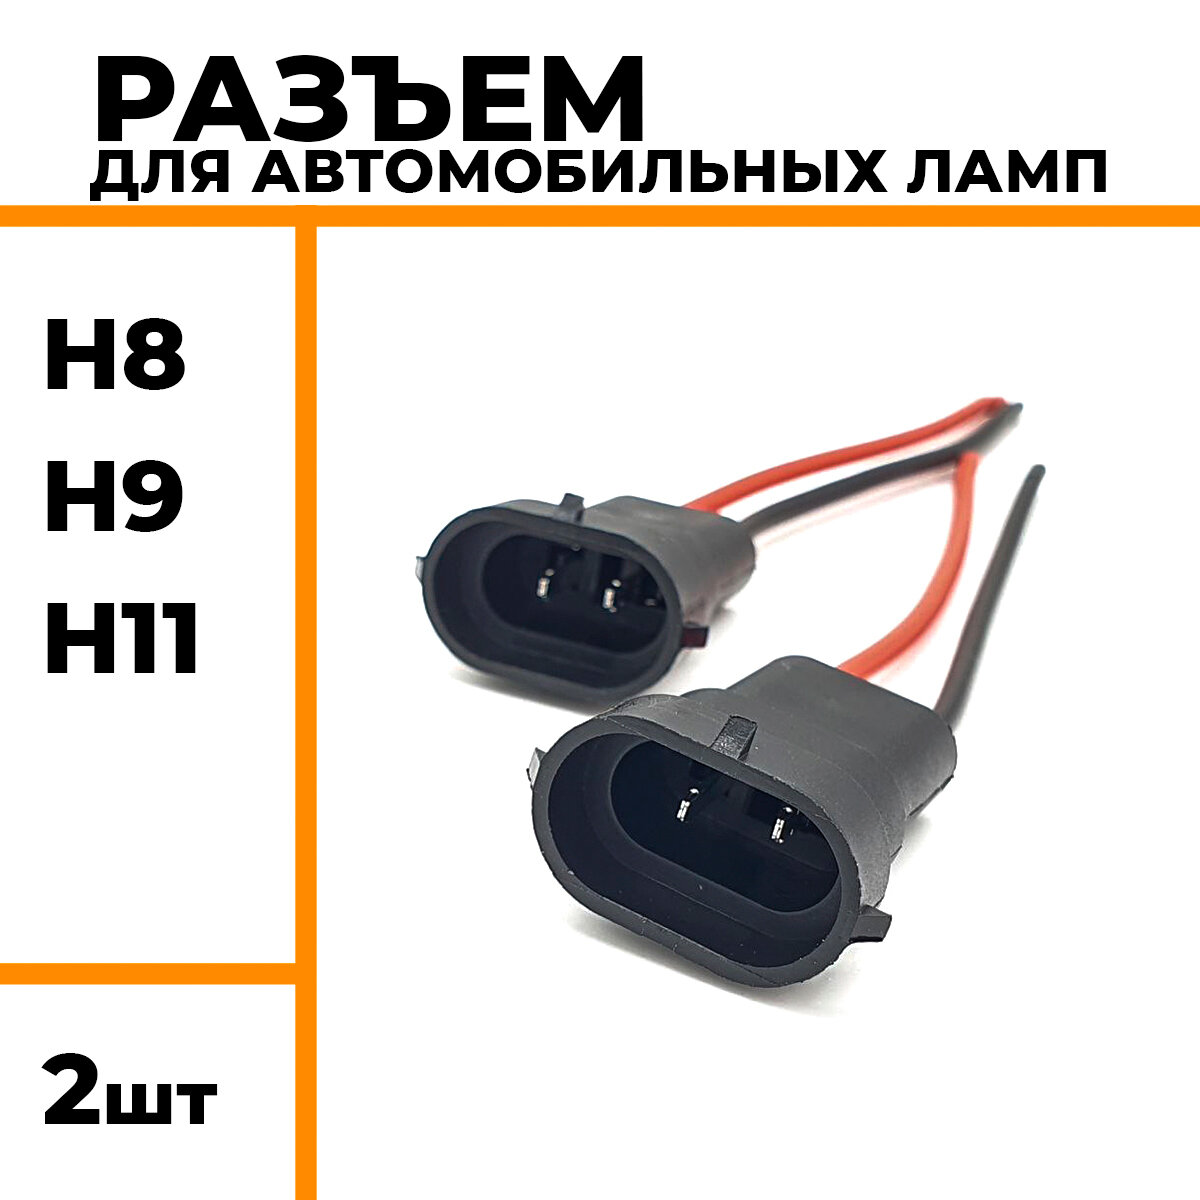 Разъем для автомобильных ламп с цоколем H8 H9 H11 патрон для подключения автомобильных ламп 2 шт